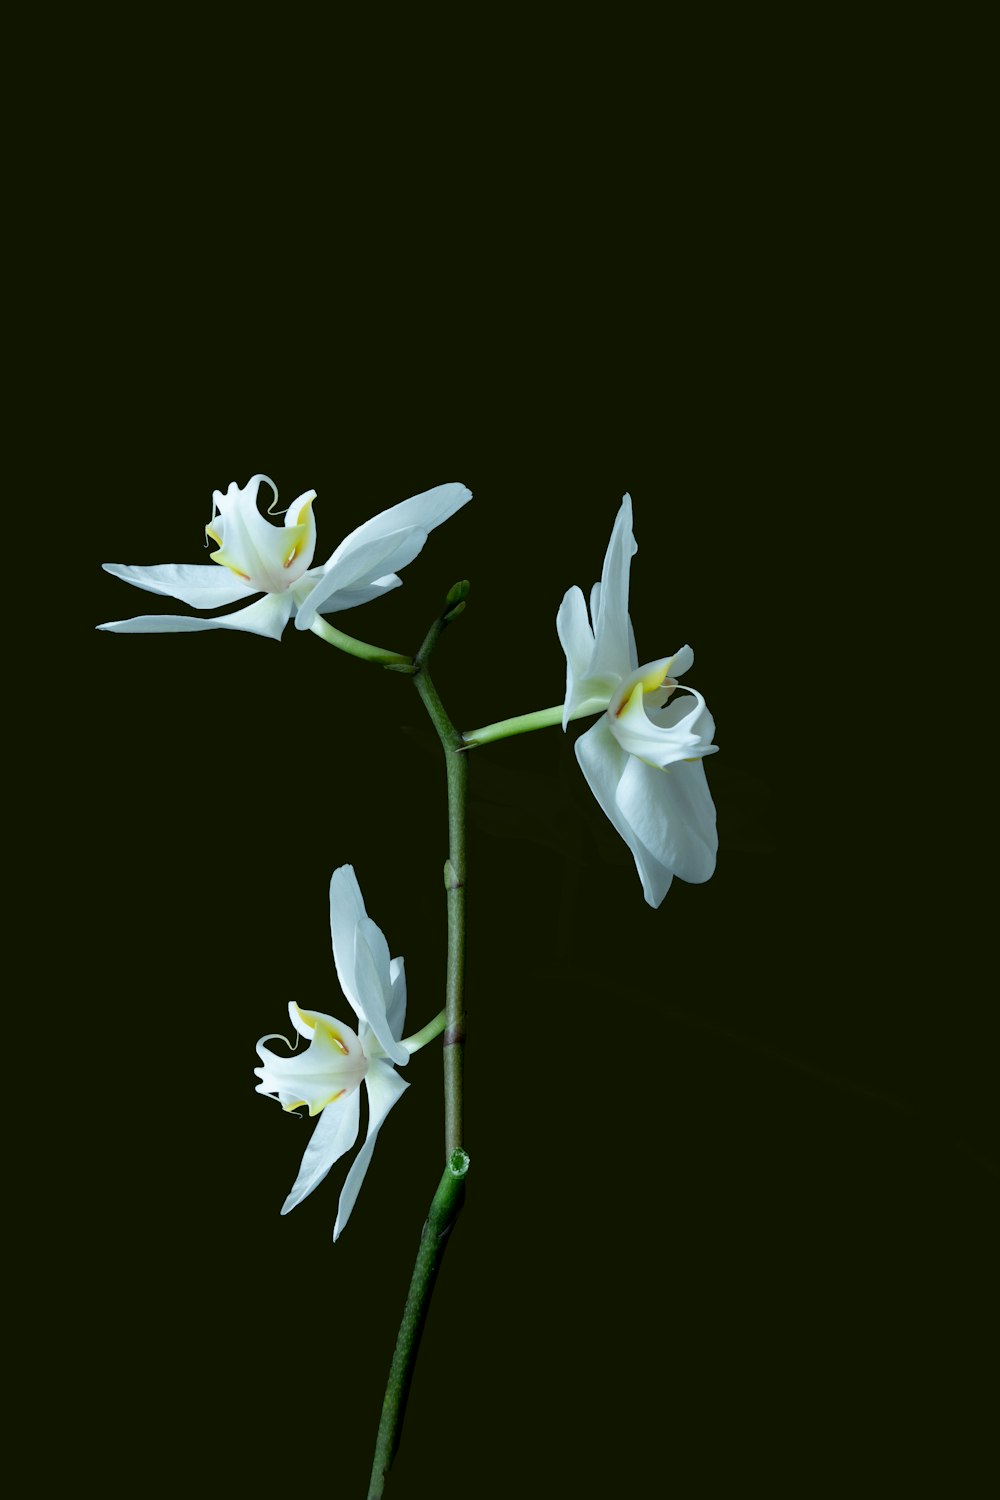 eine einzelne weiße Blume auf einem Stiel vor schwarzem Hintergrund